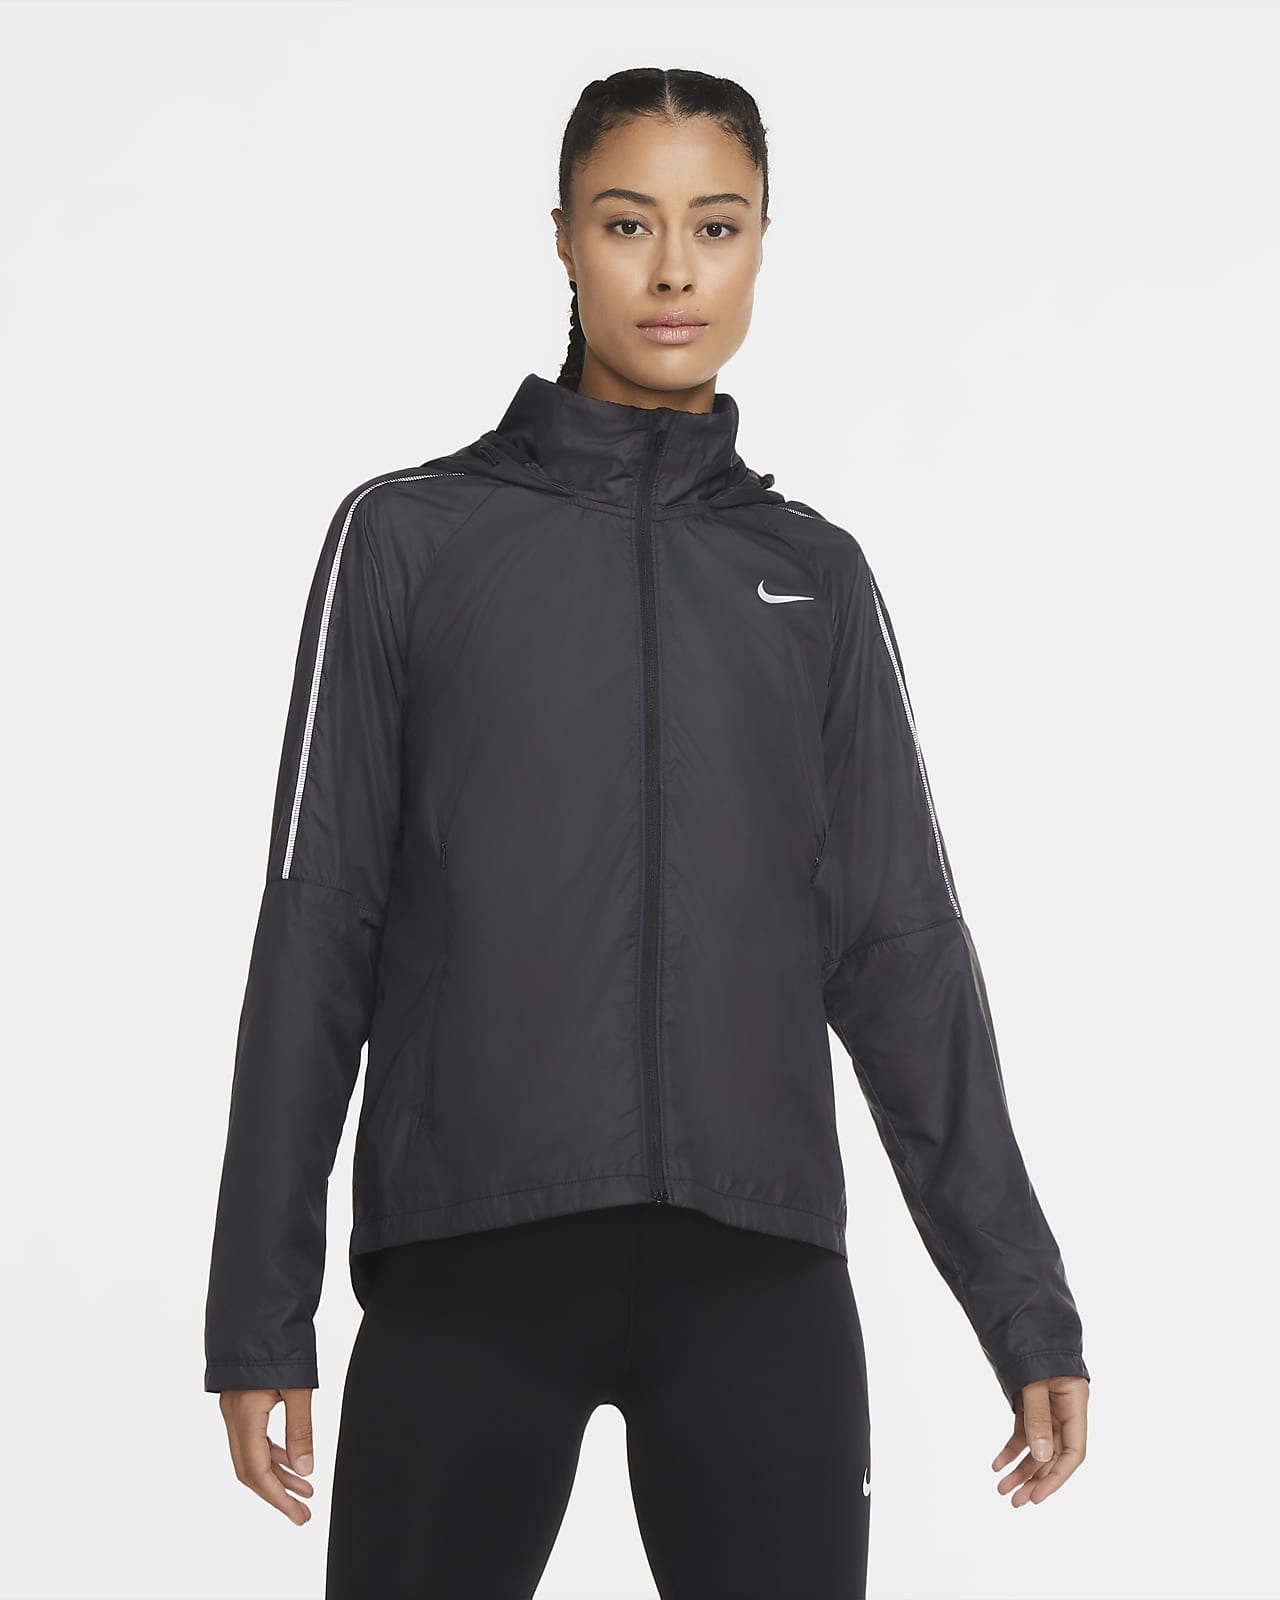 Intrekking werkwoord Terminal Nike Shield Women's Running Jacket. Nike NO